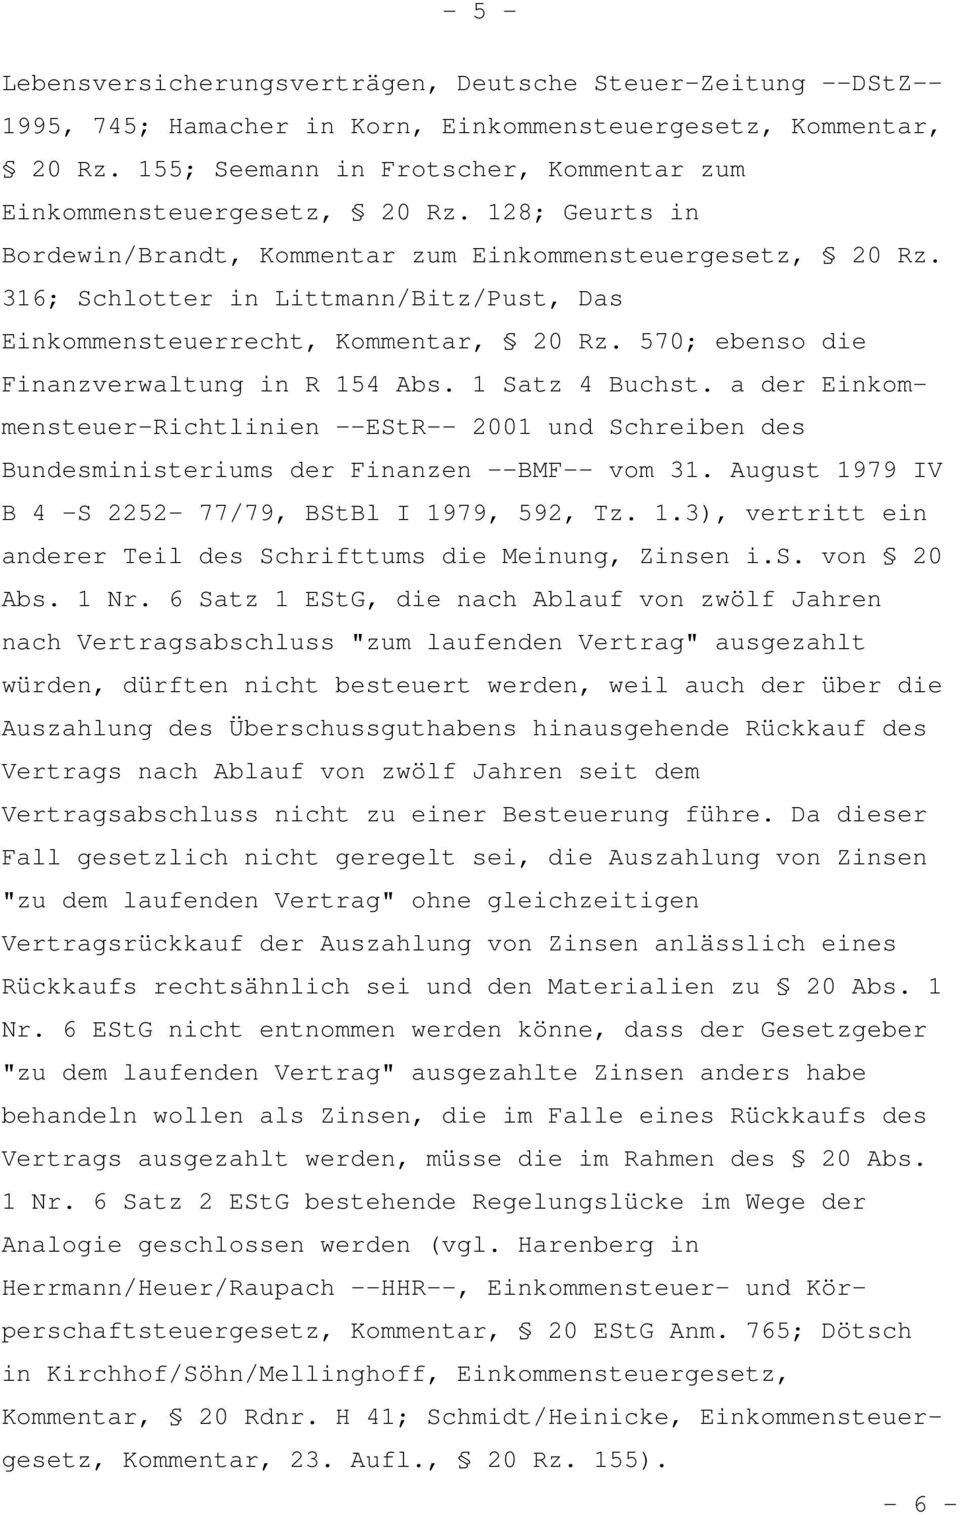 316; Schlotter in Littmann/Bitz/Pust, Das Einkommensteuerrecht, Kommentar, 20 Rz. 570; ebenso die Finanzverwaltung in R 154 Abs. 1 Satz 4 Buchst.